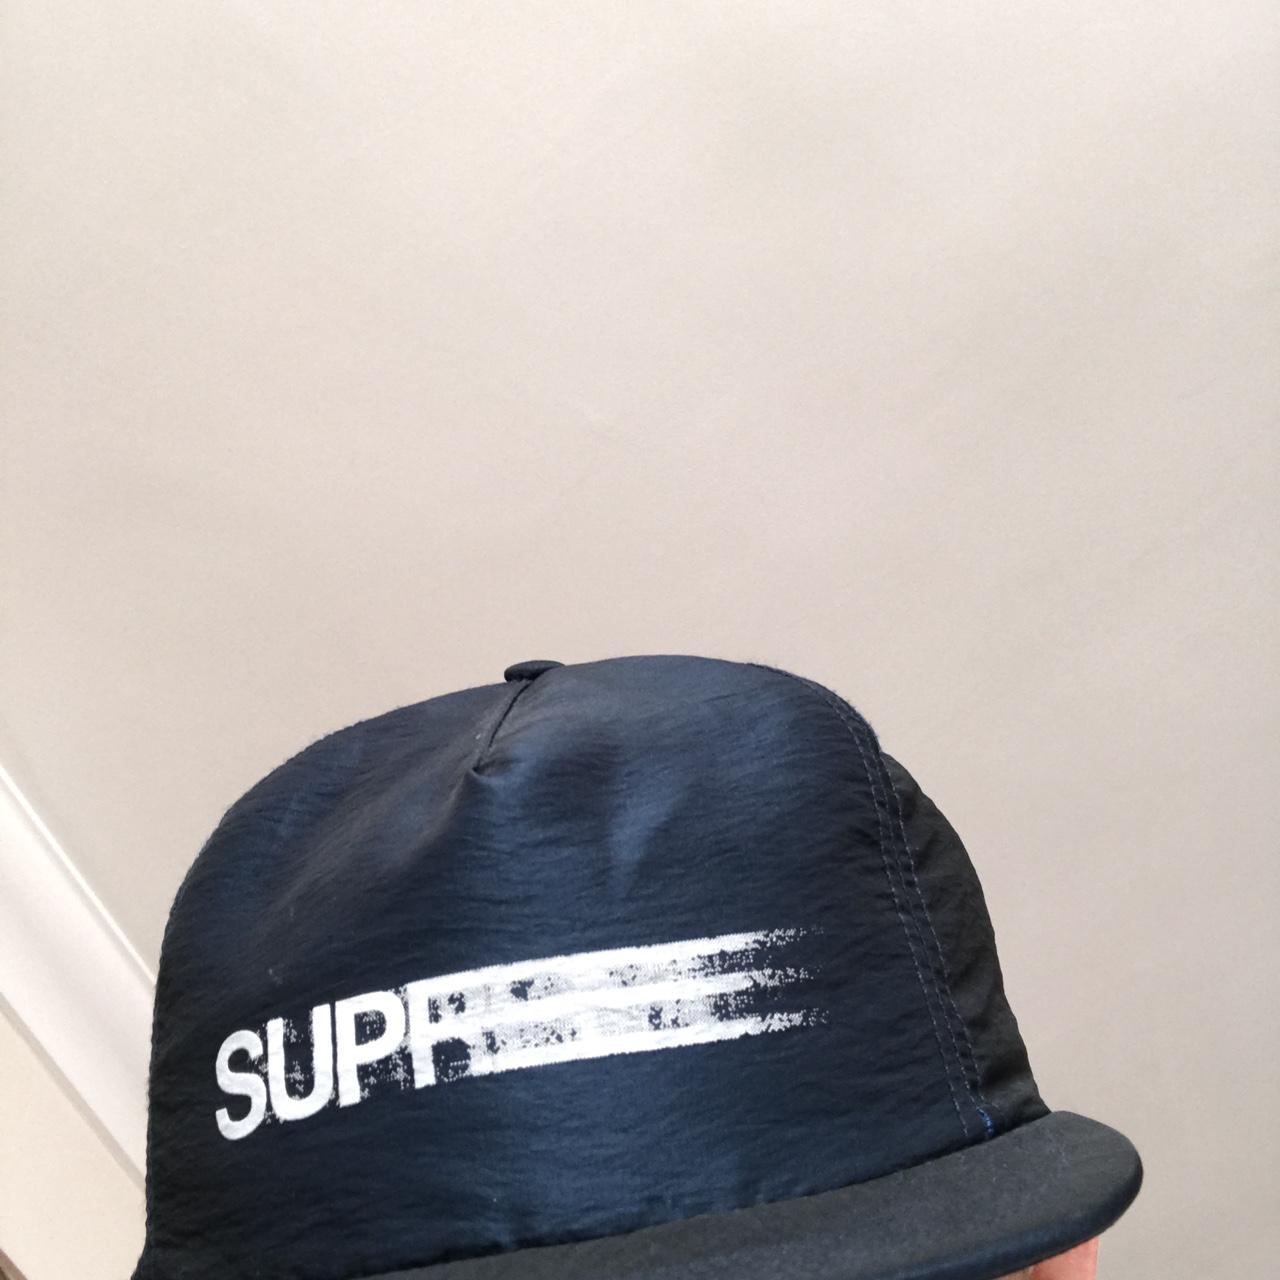 Supreme motion logo hat - looks like it's in - Depop